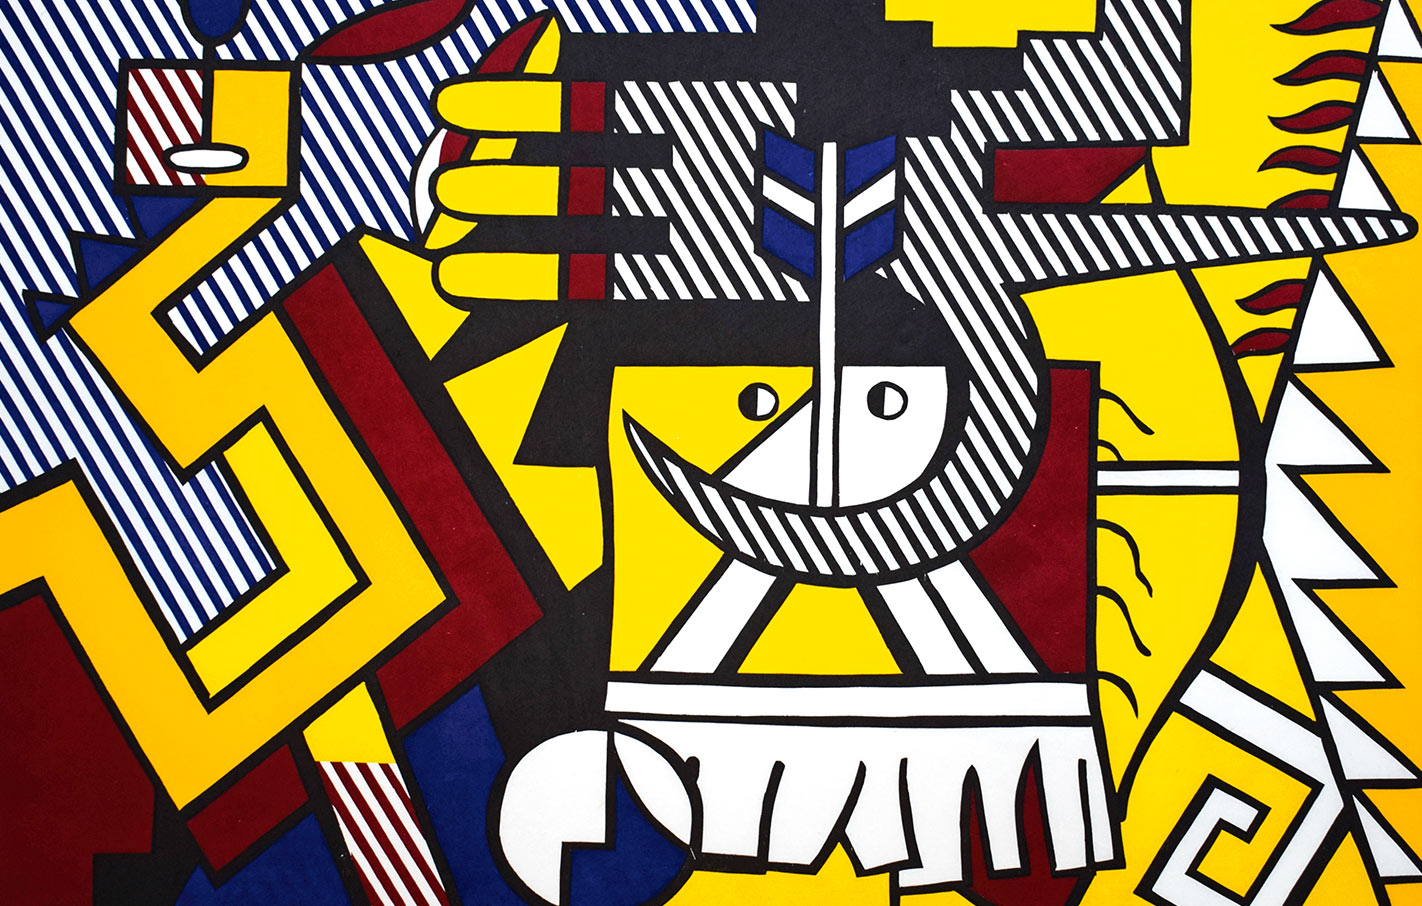 Lichtenstein, American Indian Theme VI, Woodcut, 1980, Courtesy Gilden’s Art Gallery